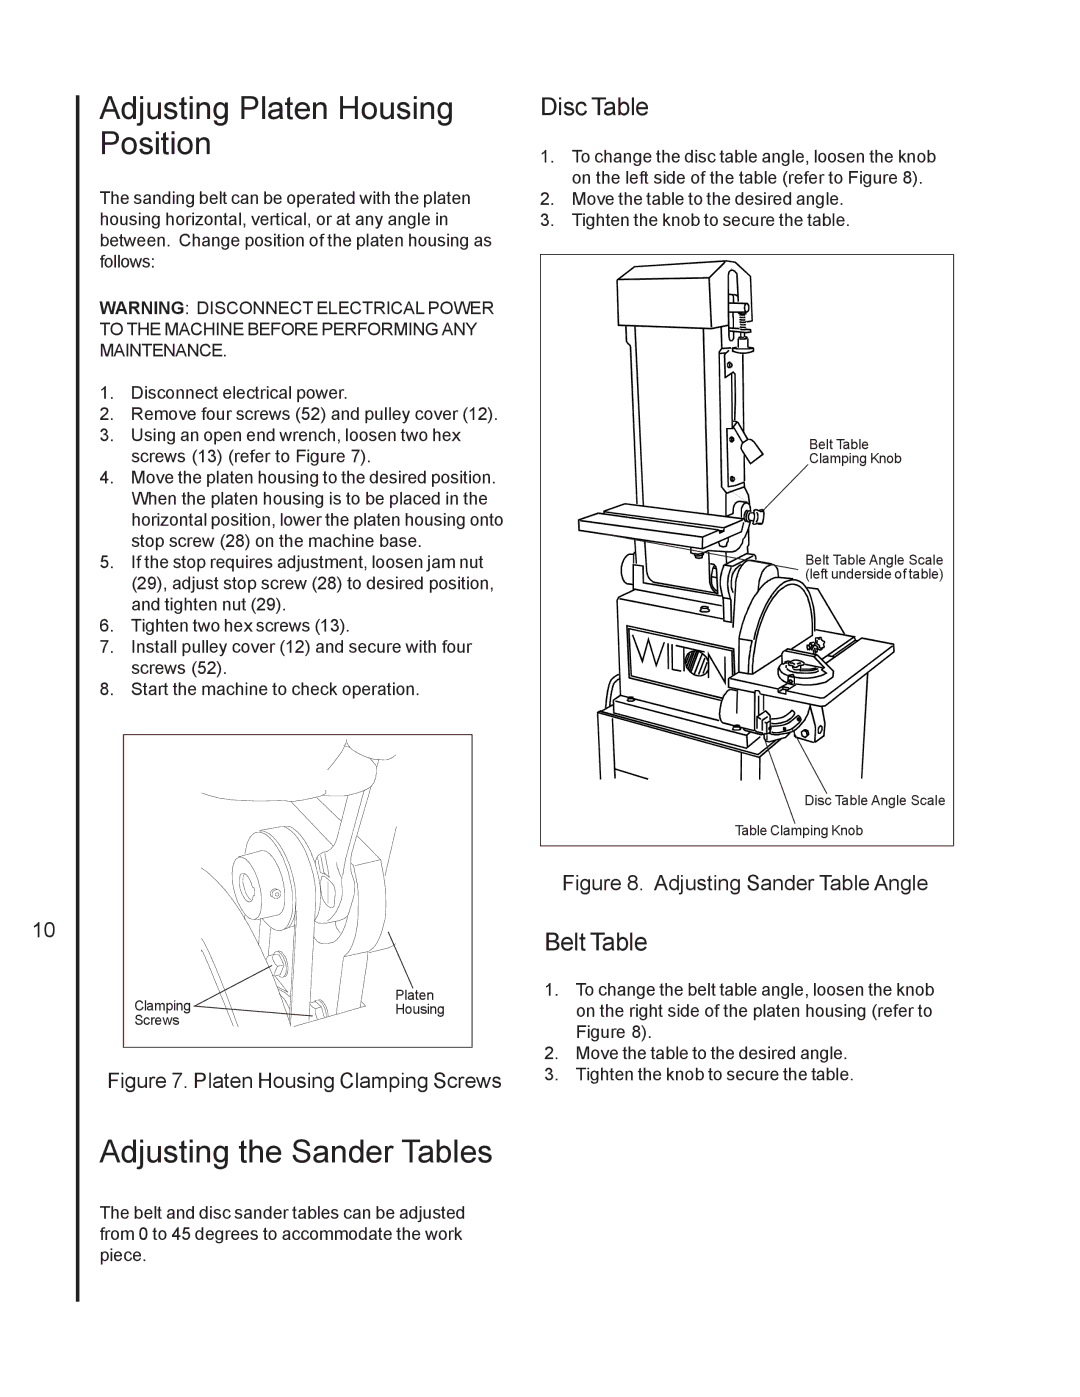 Wilton 4210 manual Adjusting Platen Housing Position, Adjusting the Sander Tables, Disc Table, Belt Table 